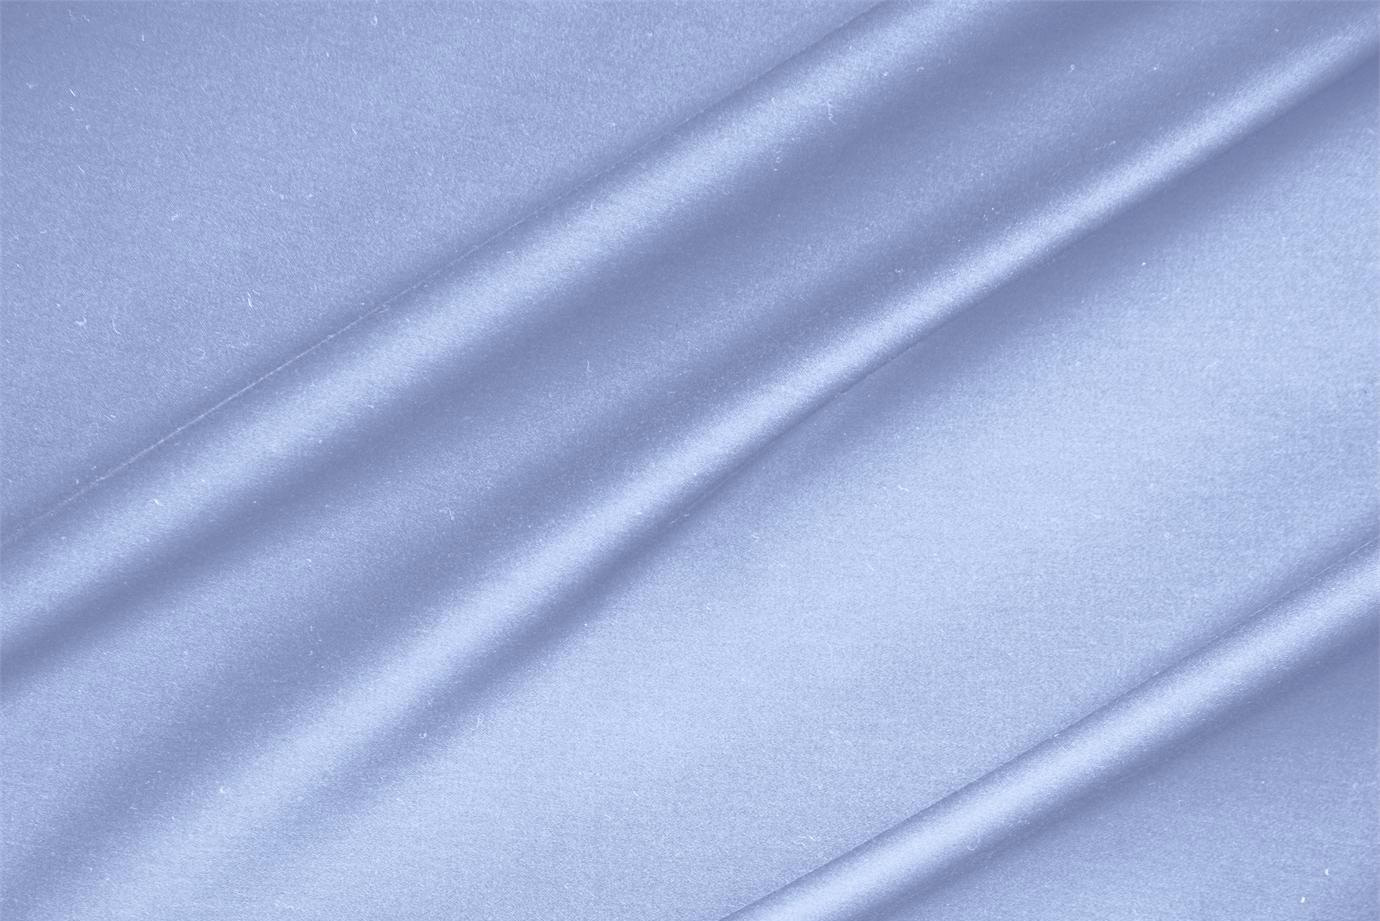 Light blue lightweight stretch cotton sateen fabric for dressmaking